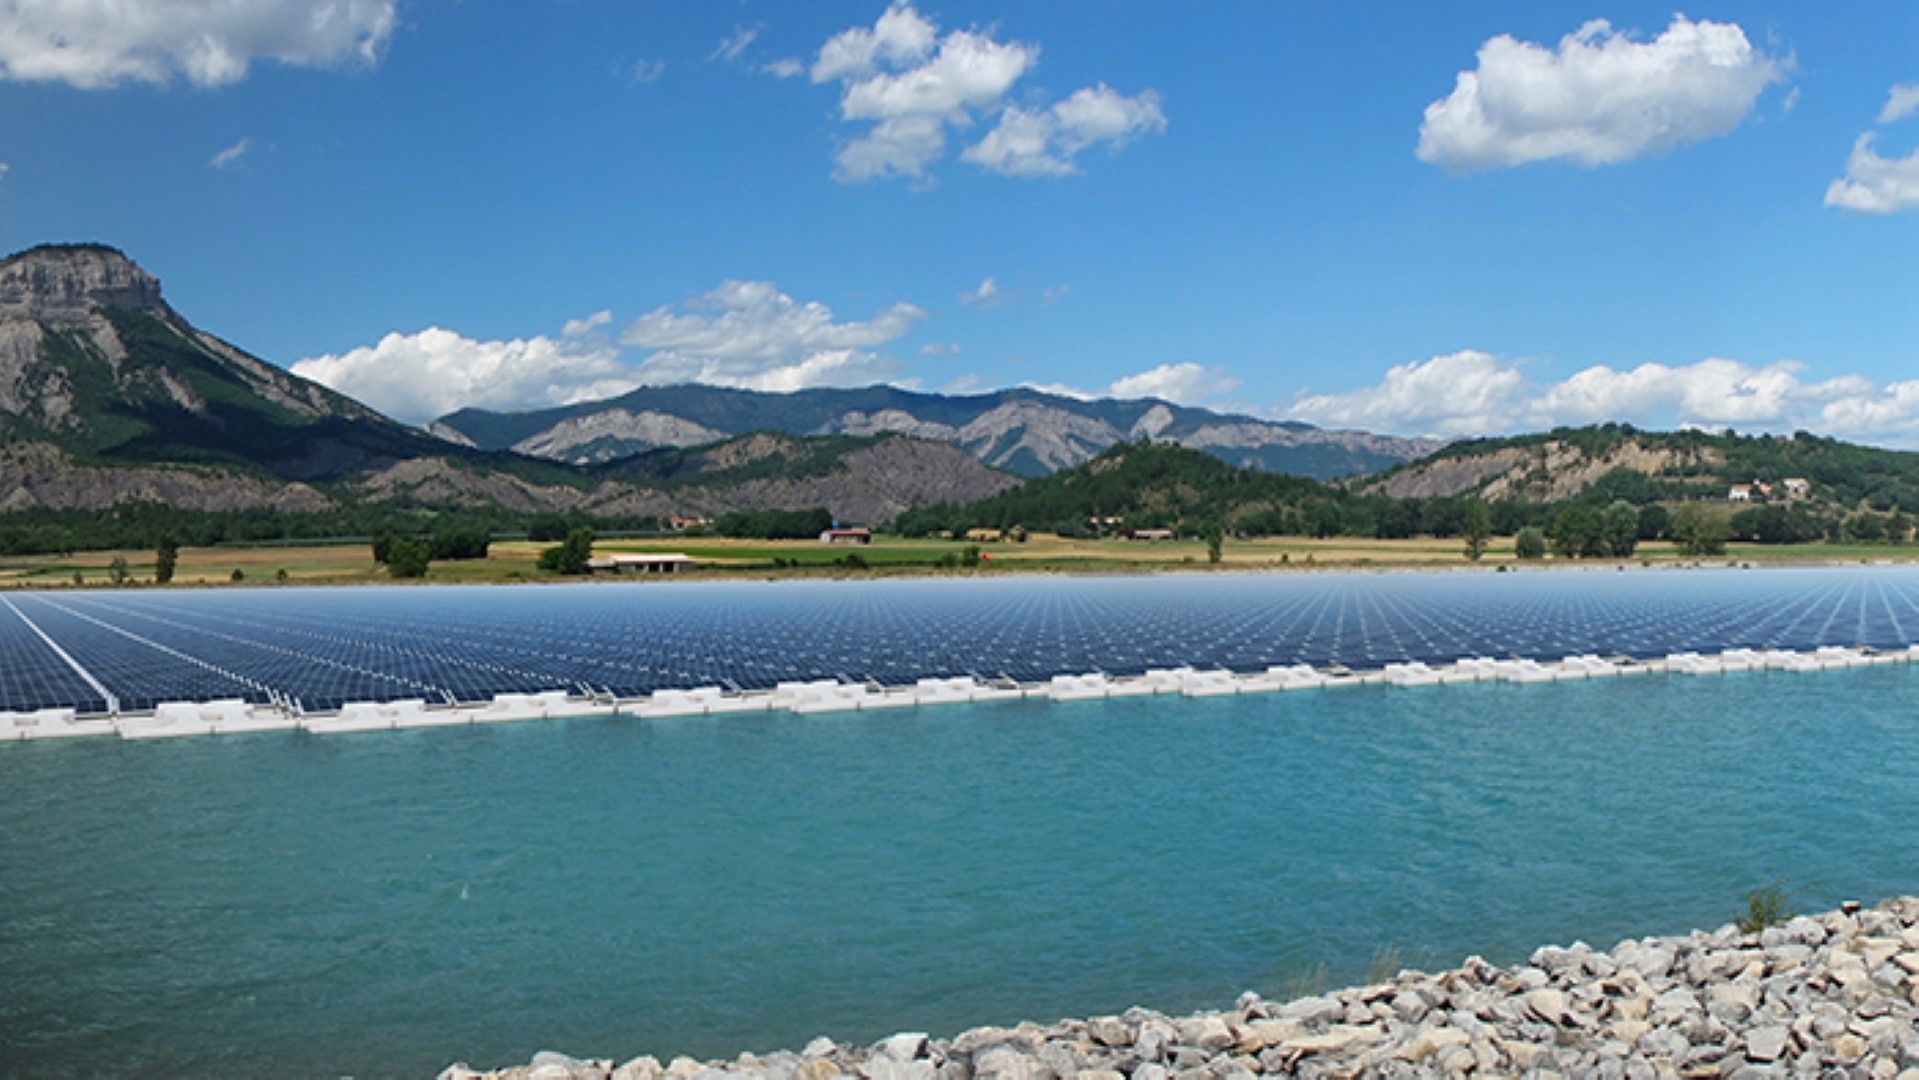 първия плаващ соларен парк във Франция - в община Лазер